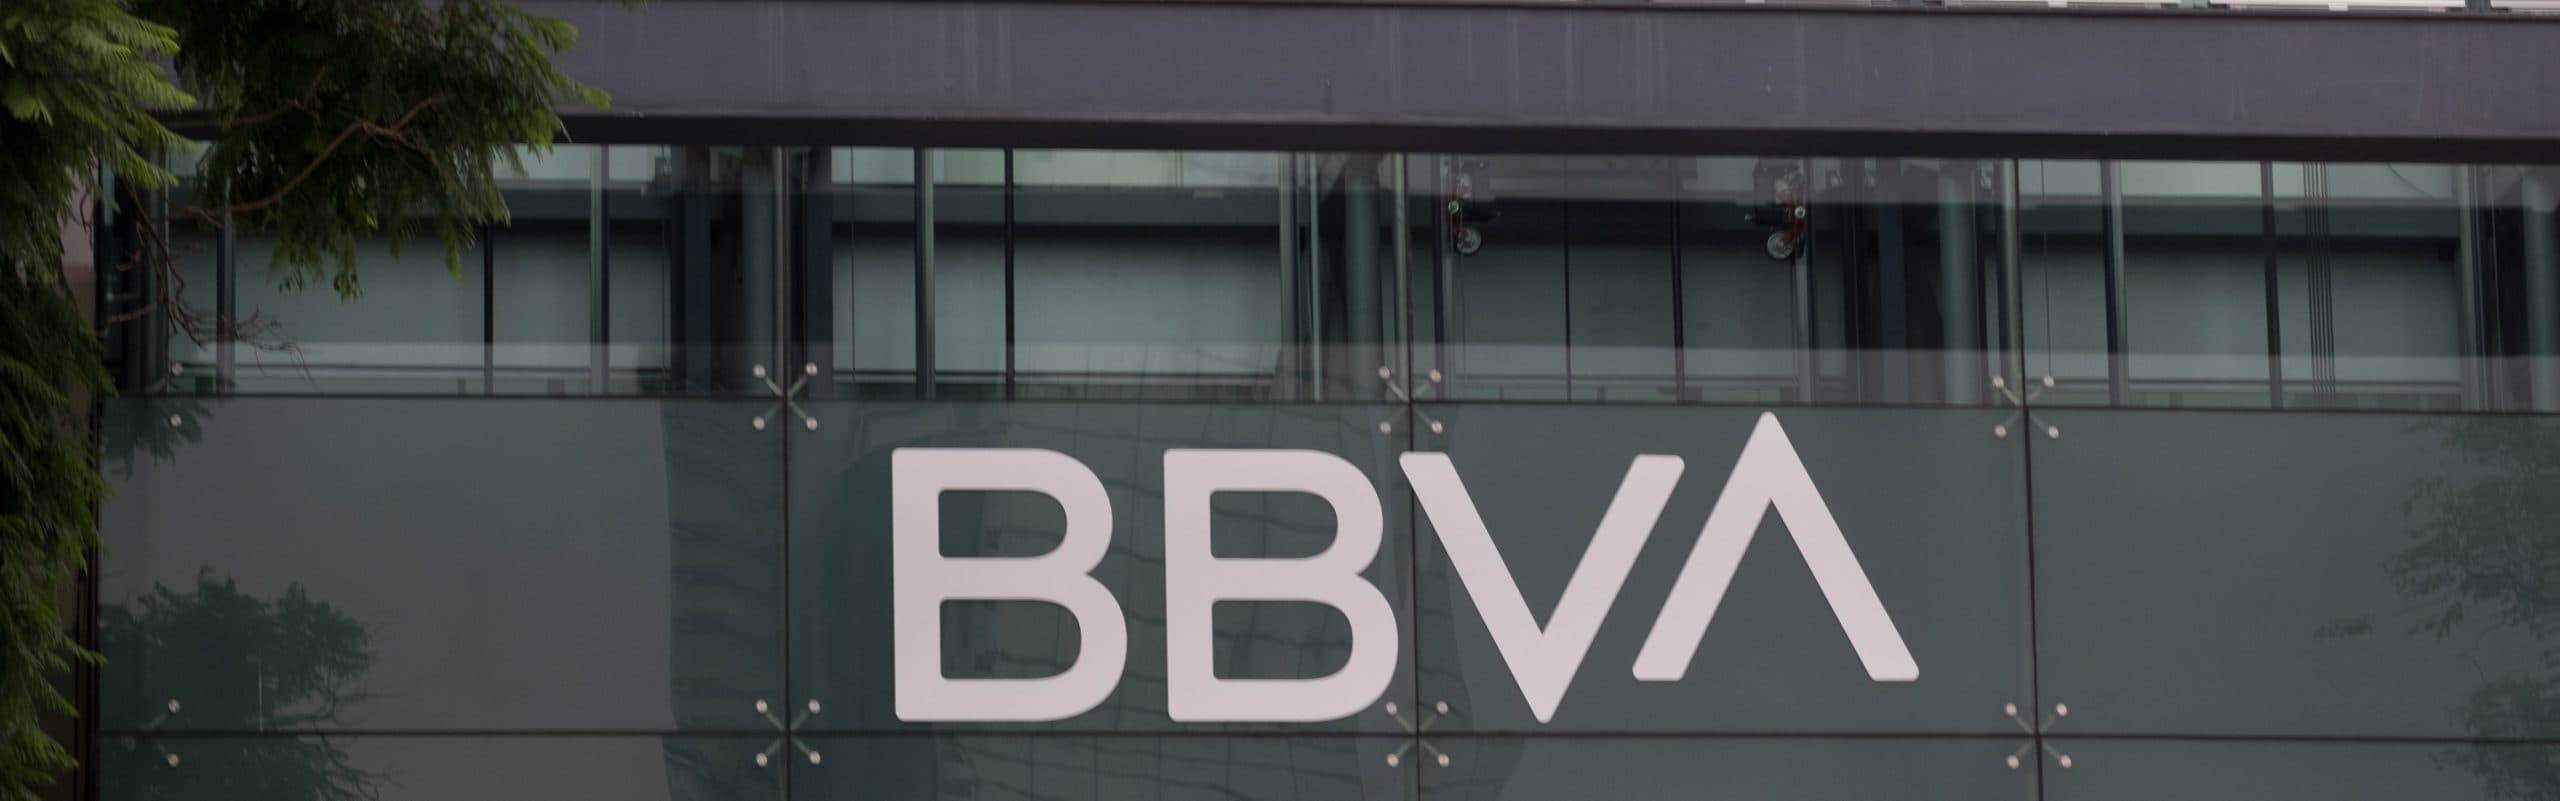 Conocido en México como BBVA Bancomer, el banco anunció en meses anteriores la unificación de su marca en todo el mundo a BBVA • Foto: Graciela López/Cuartoscuro.